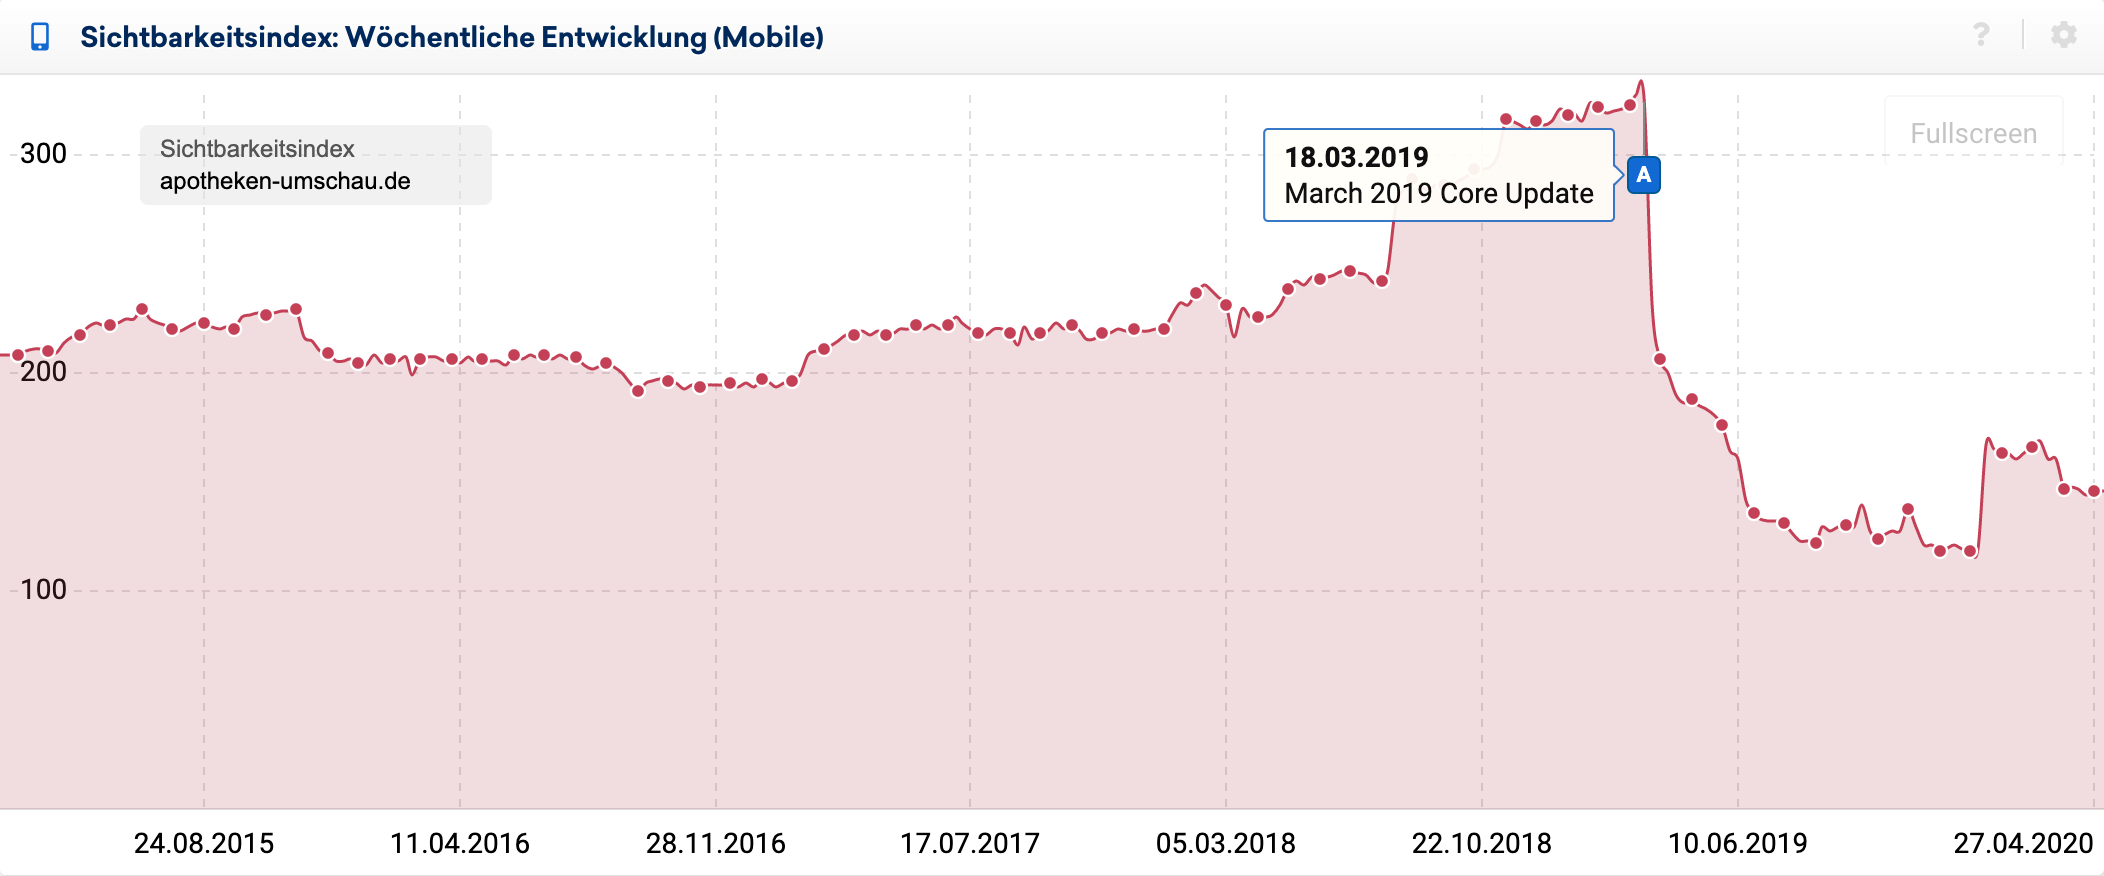 Mobiler Sichtbarkeitsverlauf für die Domain apotheken-umschau.de. Es gibt einen Einbruch der Sichtbarkeit um knapp 40% zum Google March 2019 Core Update.